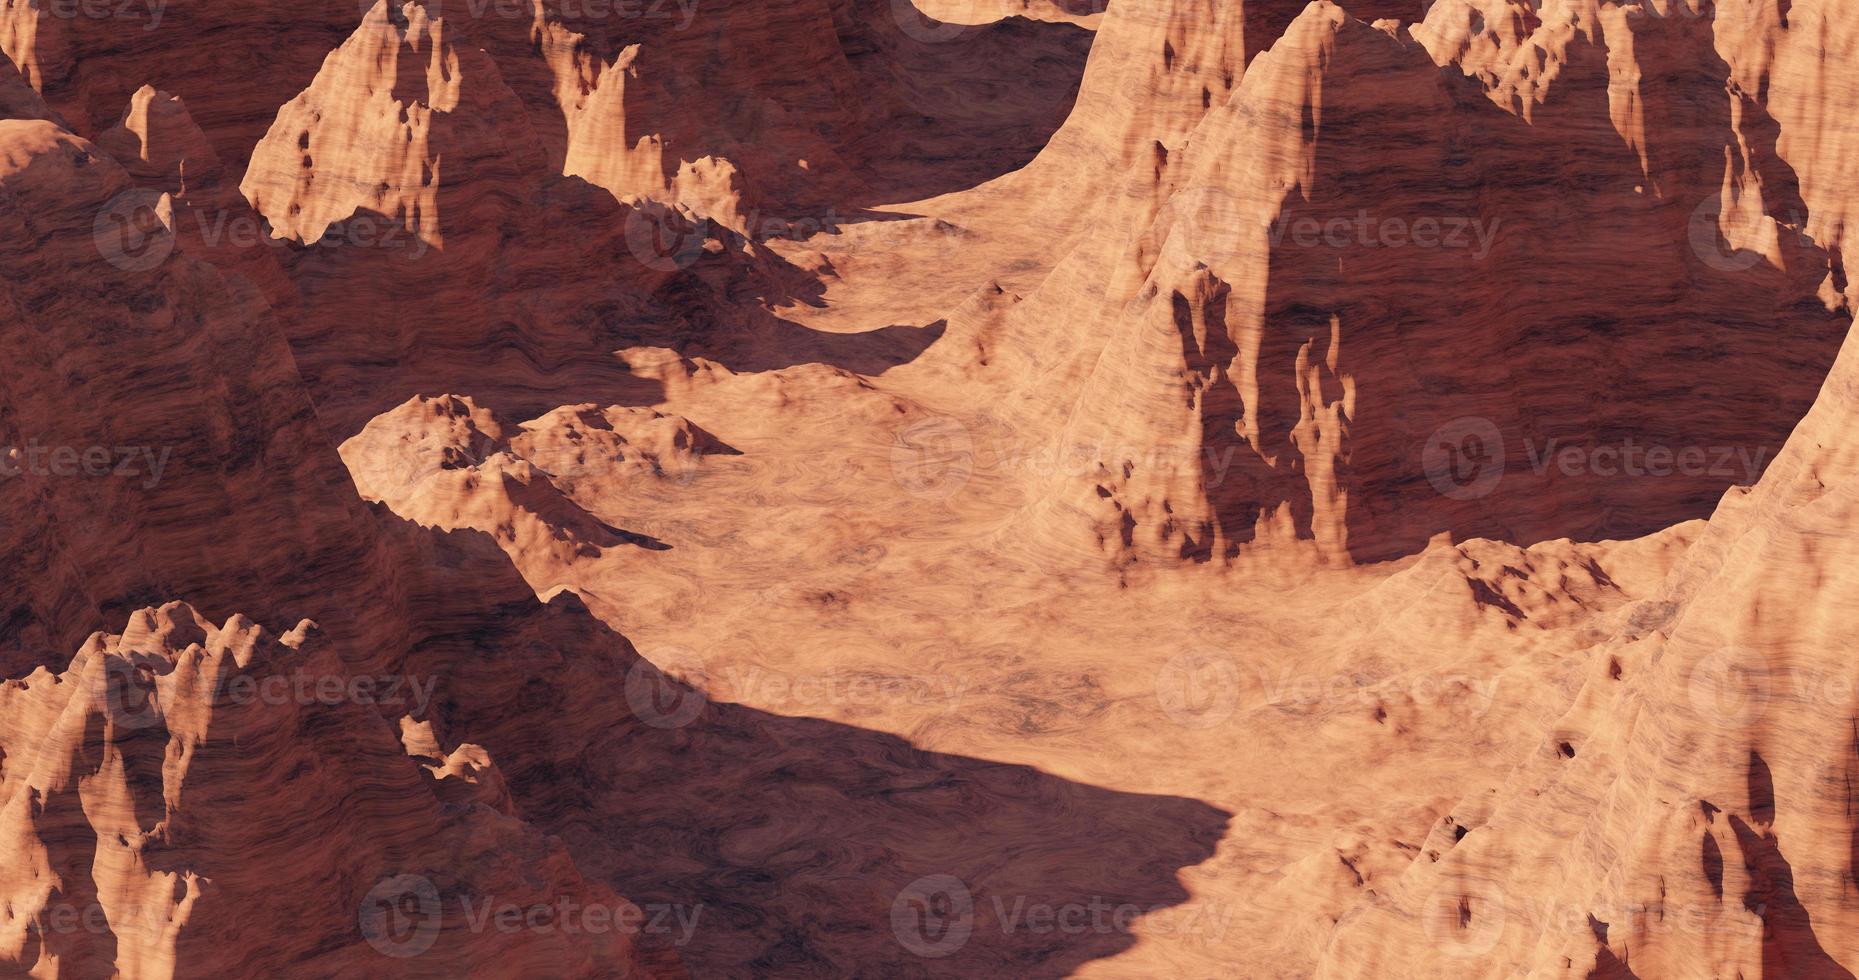 3d renderização do terreno imaginário do planeta marte, paisagem do planeta marte, deserto erodido laranja com montanhas e sol, ilustração realista de ficção científica. foto